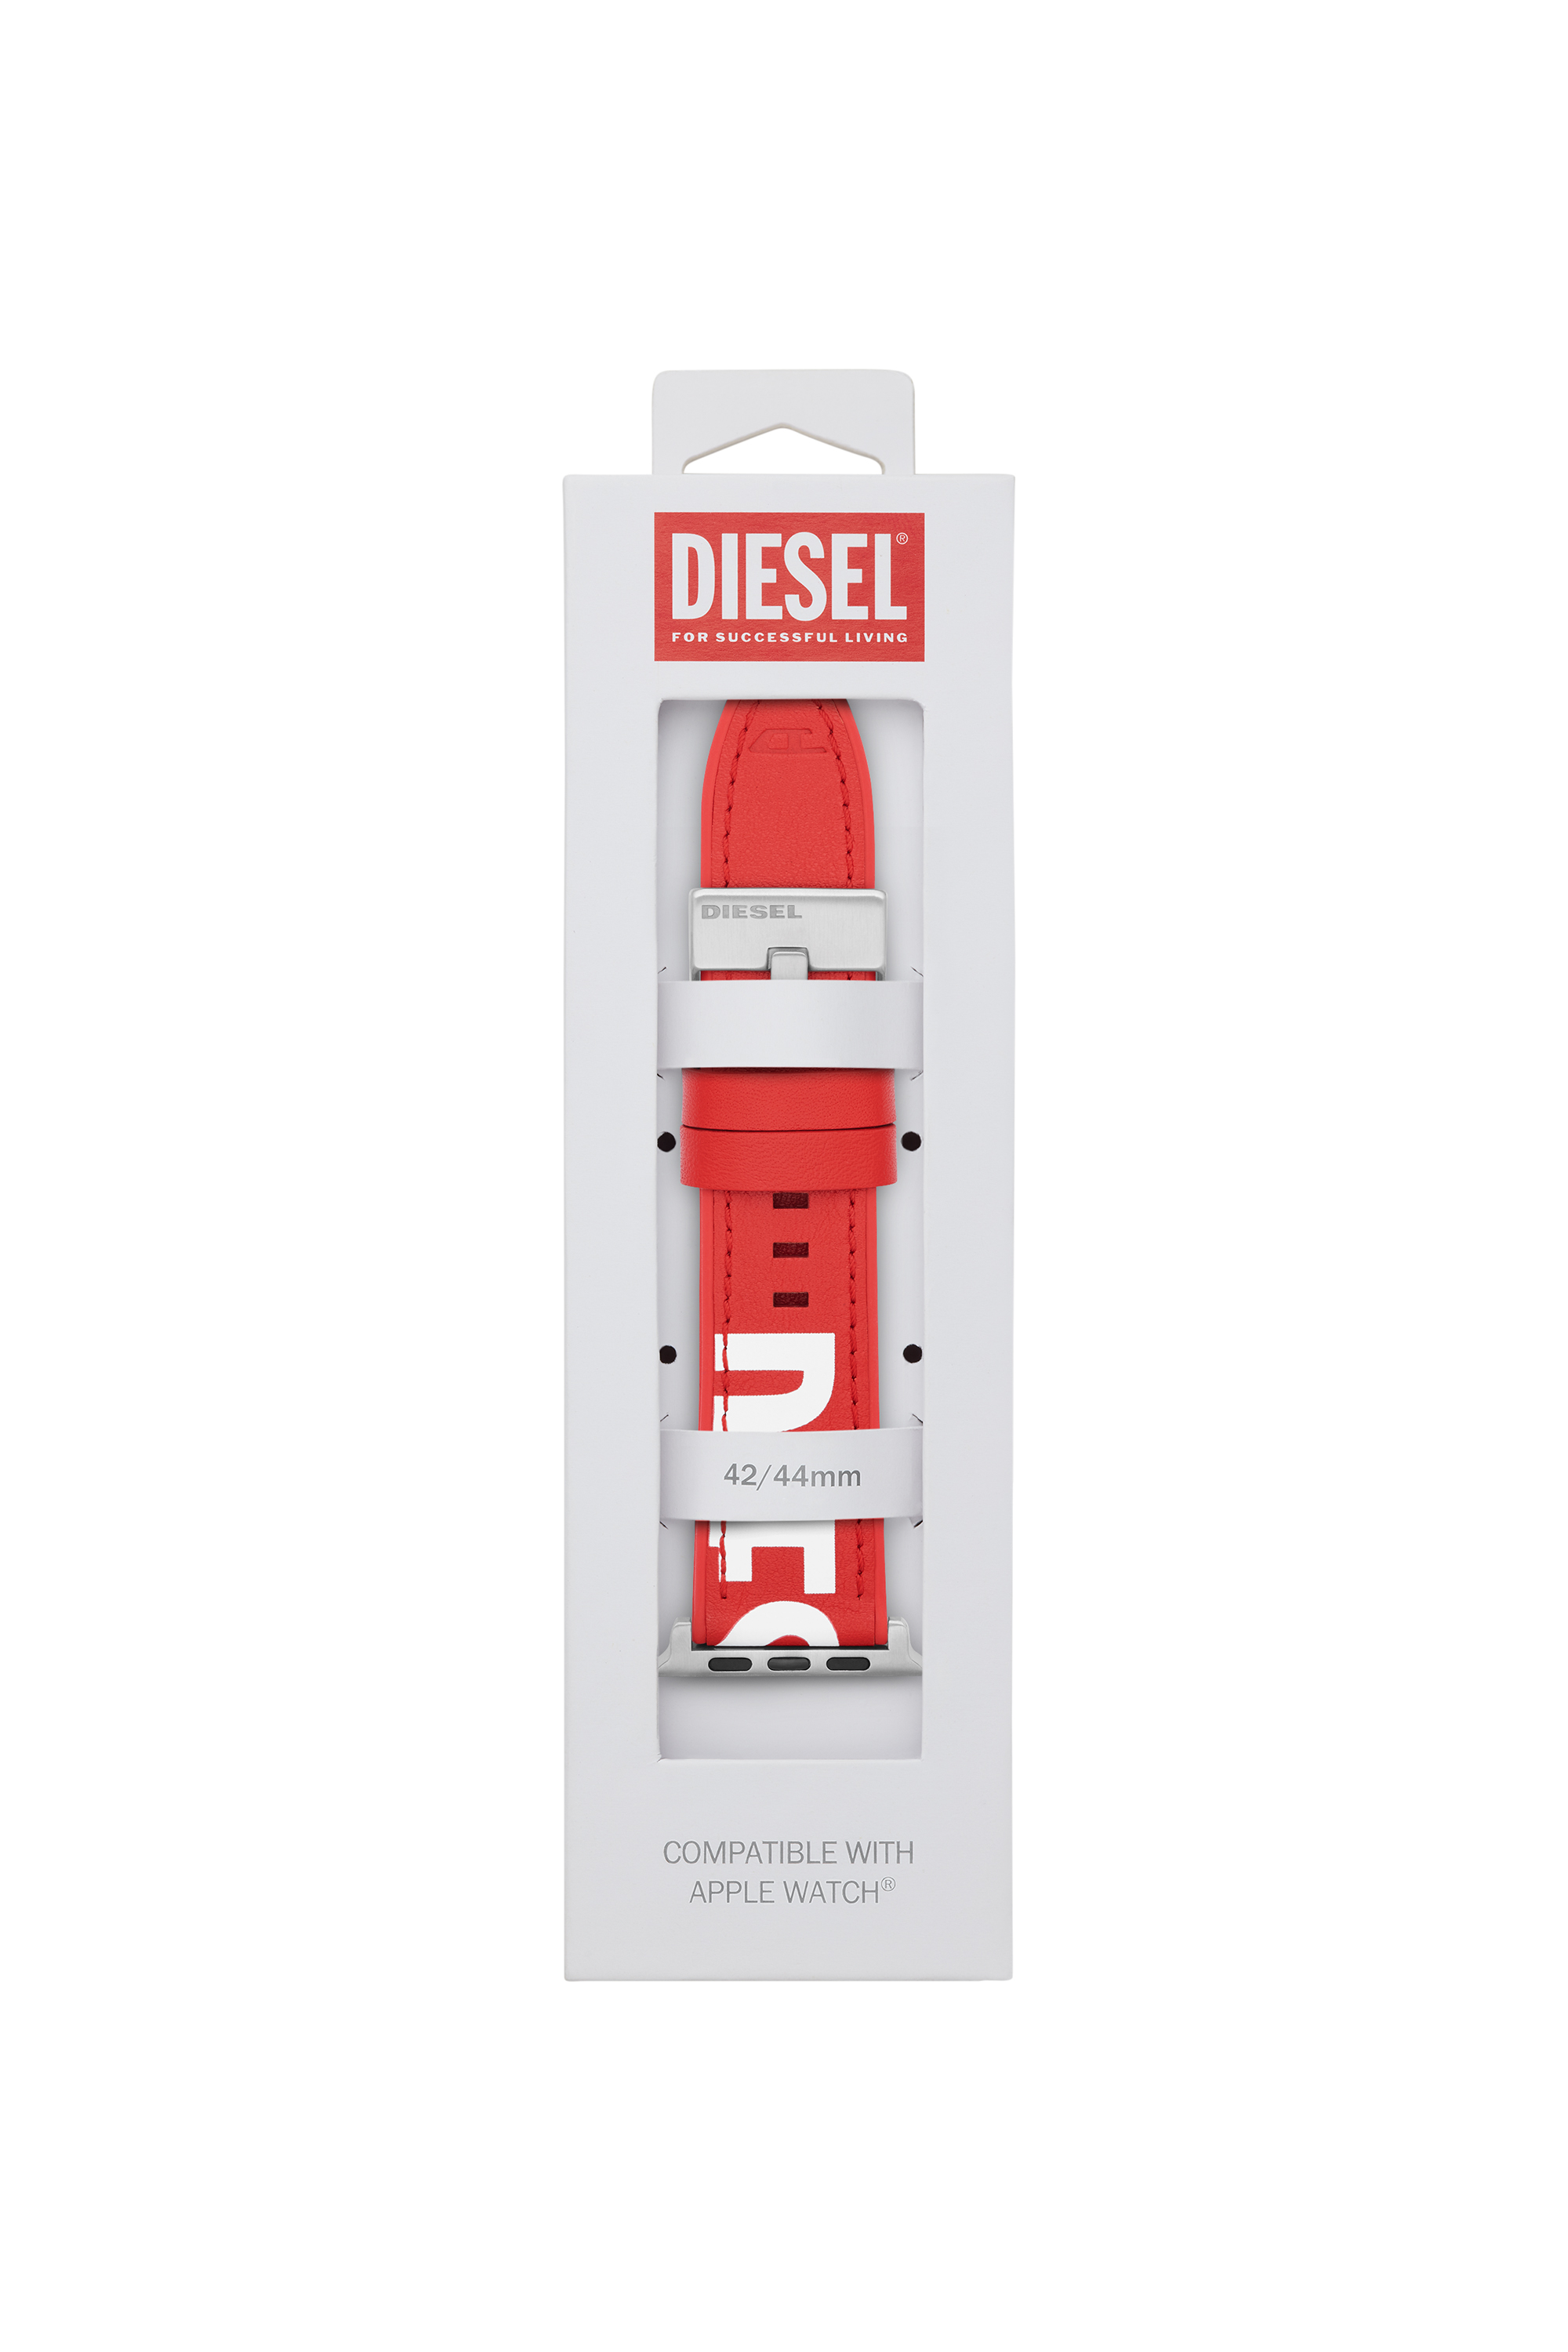 Diesel - DSS003, Rot - Image 2